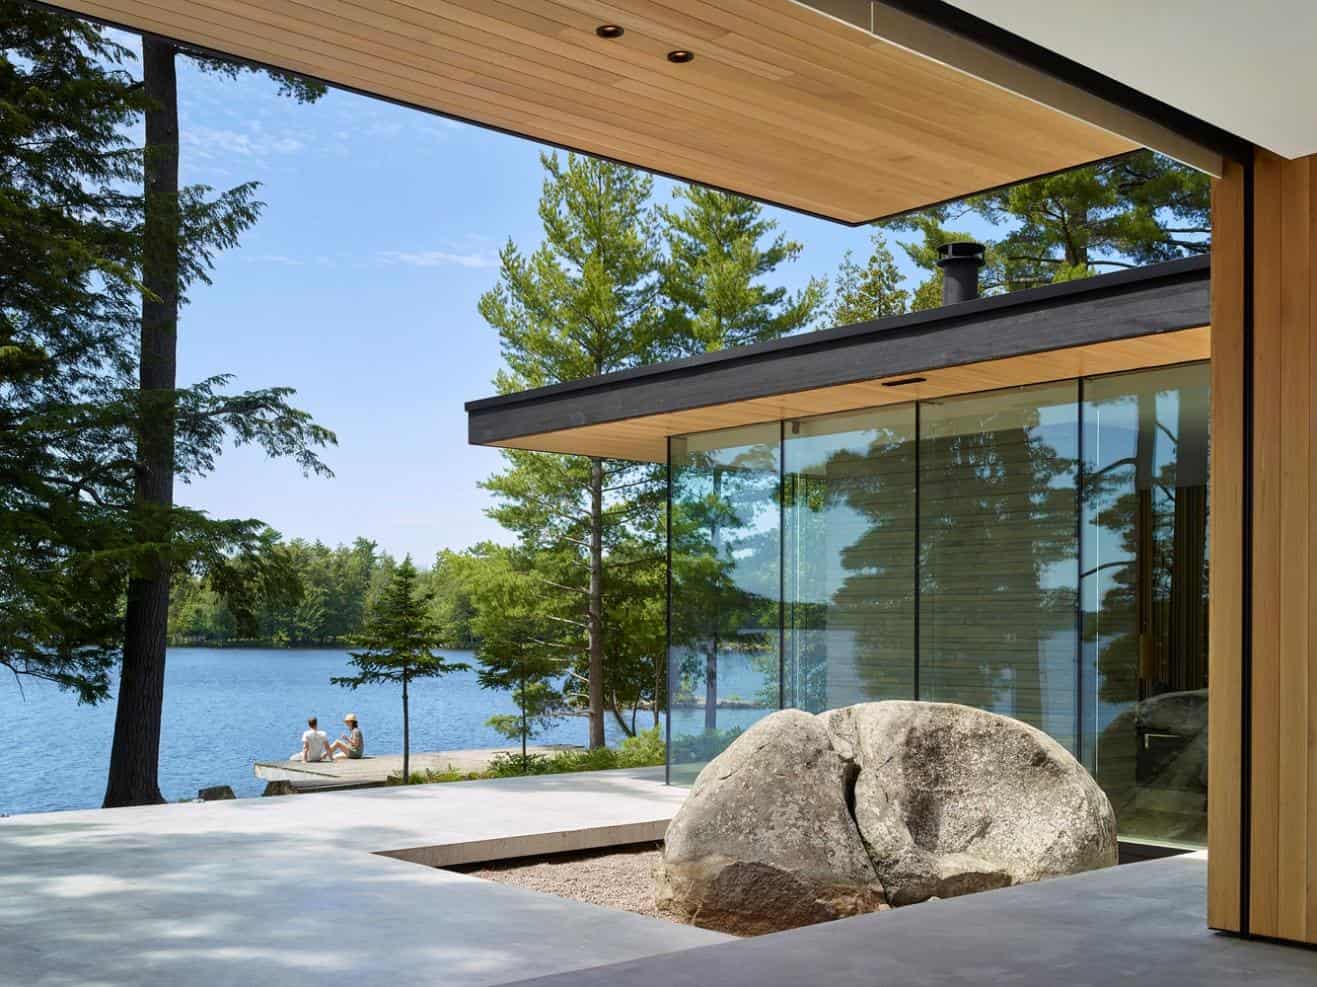 Tường nhà nhìn về phía mặt hồ được thiết kế thành tường kính, thuận lợi để ngắm nhìn cảnh hồ xinh đẹp trong lành.